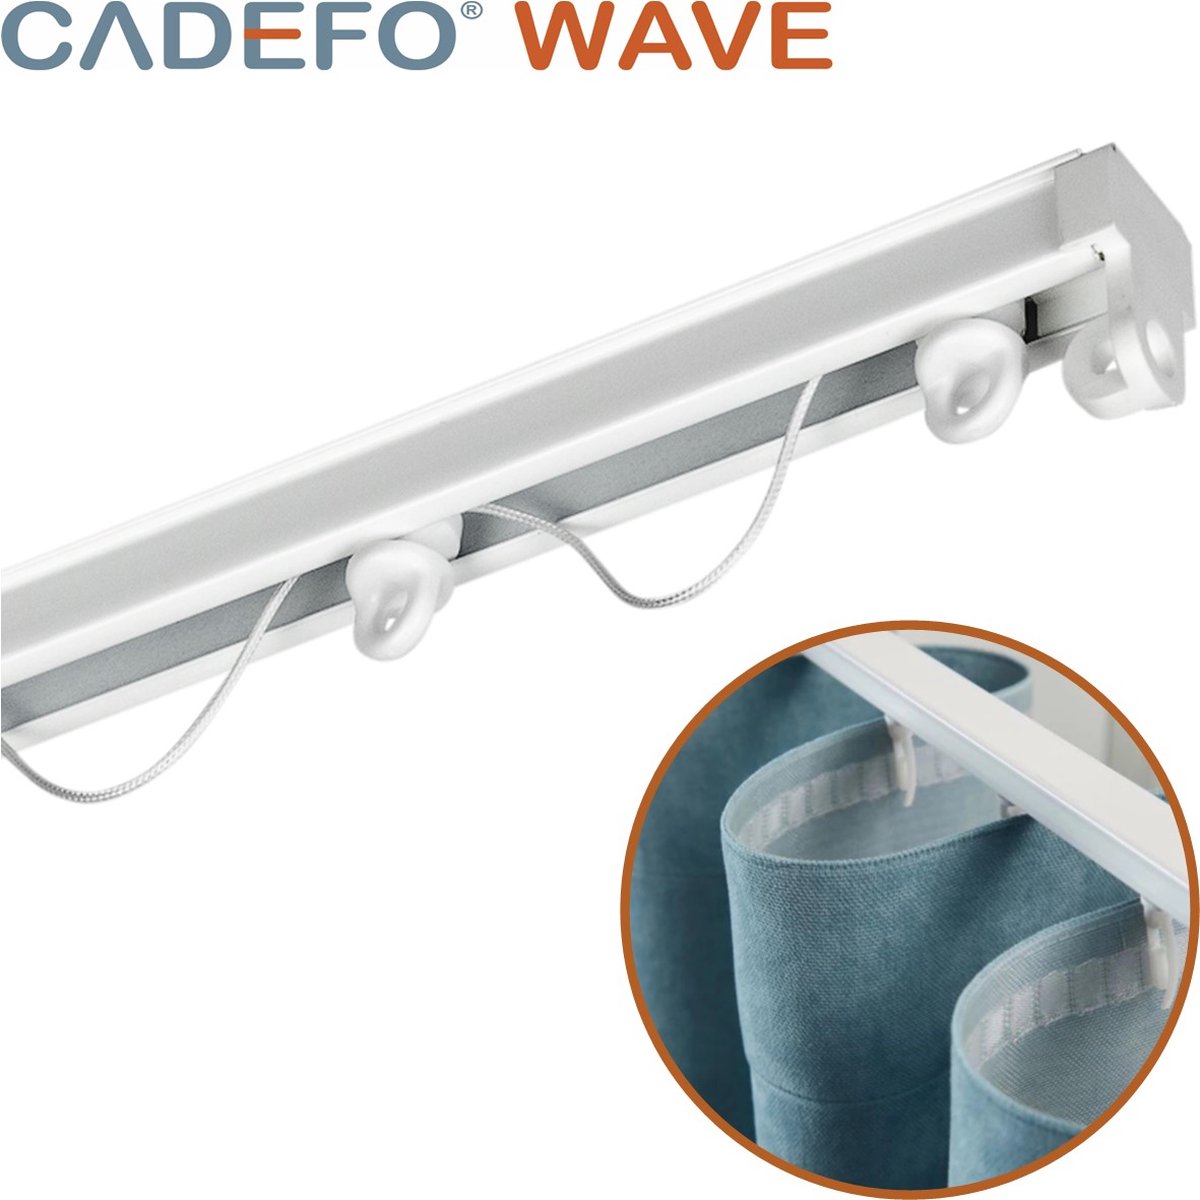 CADEFO WAVE (251 - 300 cm) Gordijnrails - Compleet op maat! - UIT 1 STUK - Leverbaar tot 6 meter - Plafondbevestiging - Lengte 276 cm